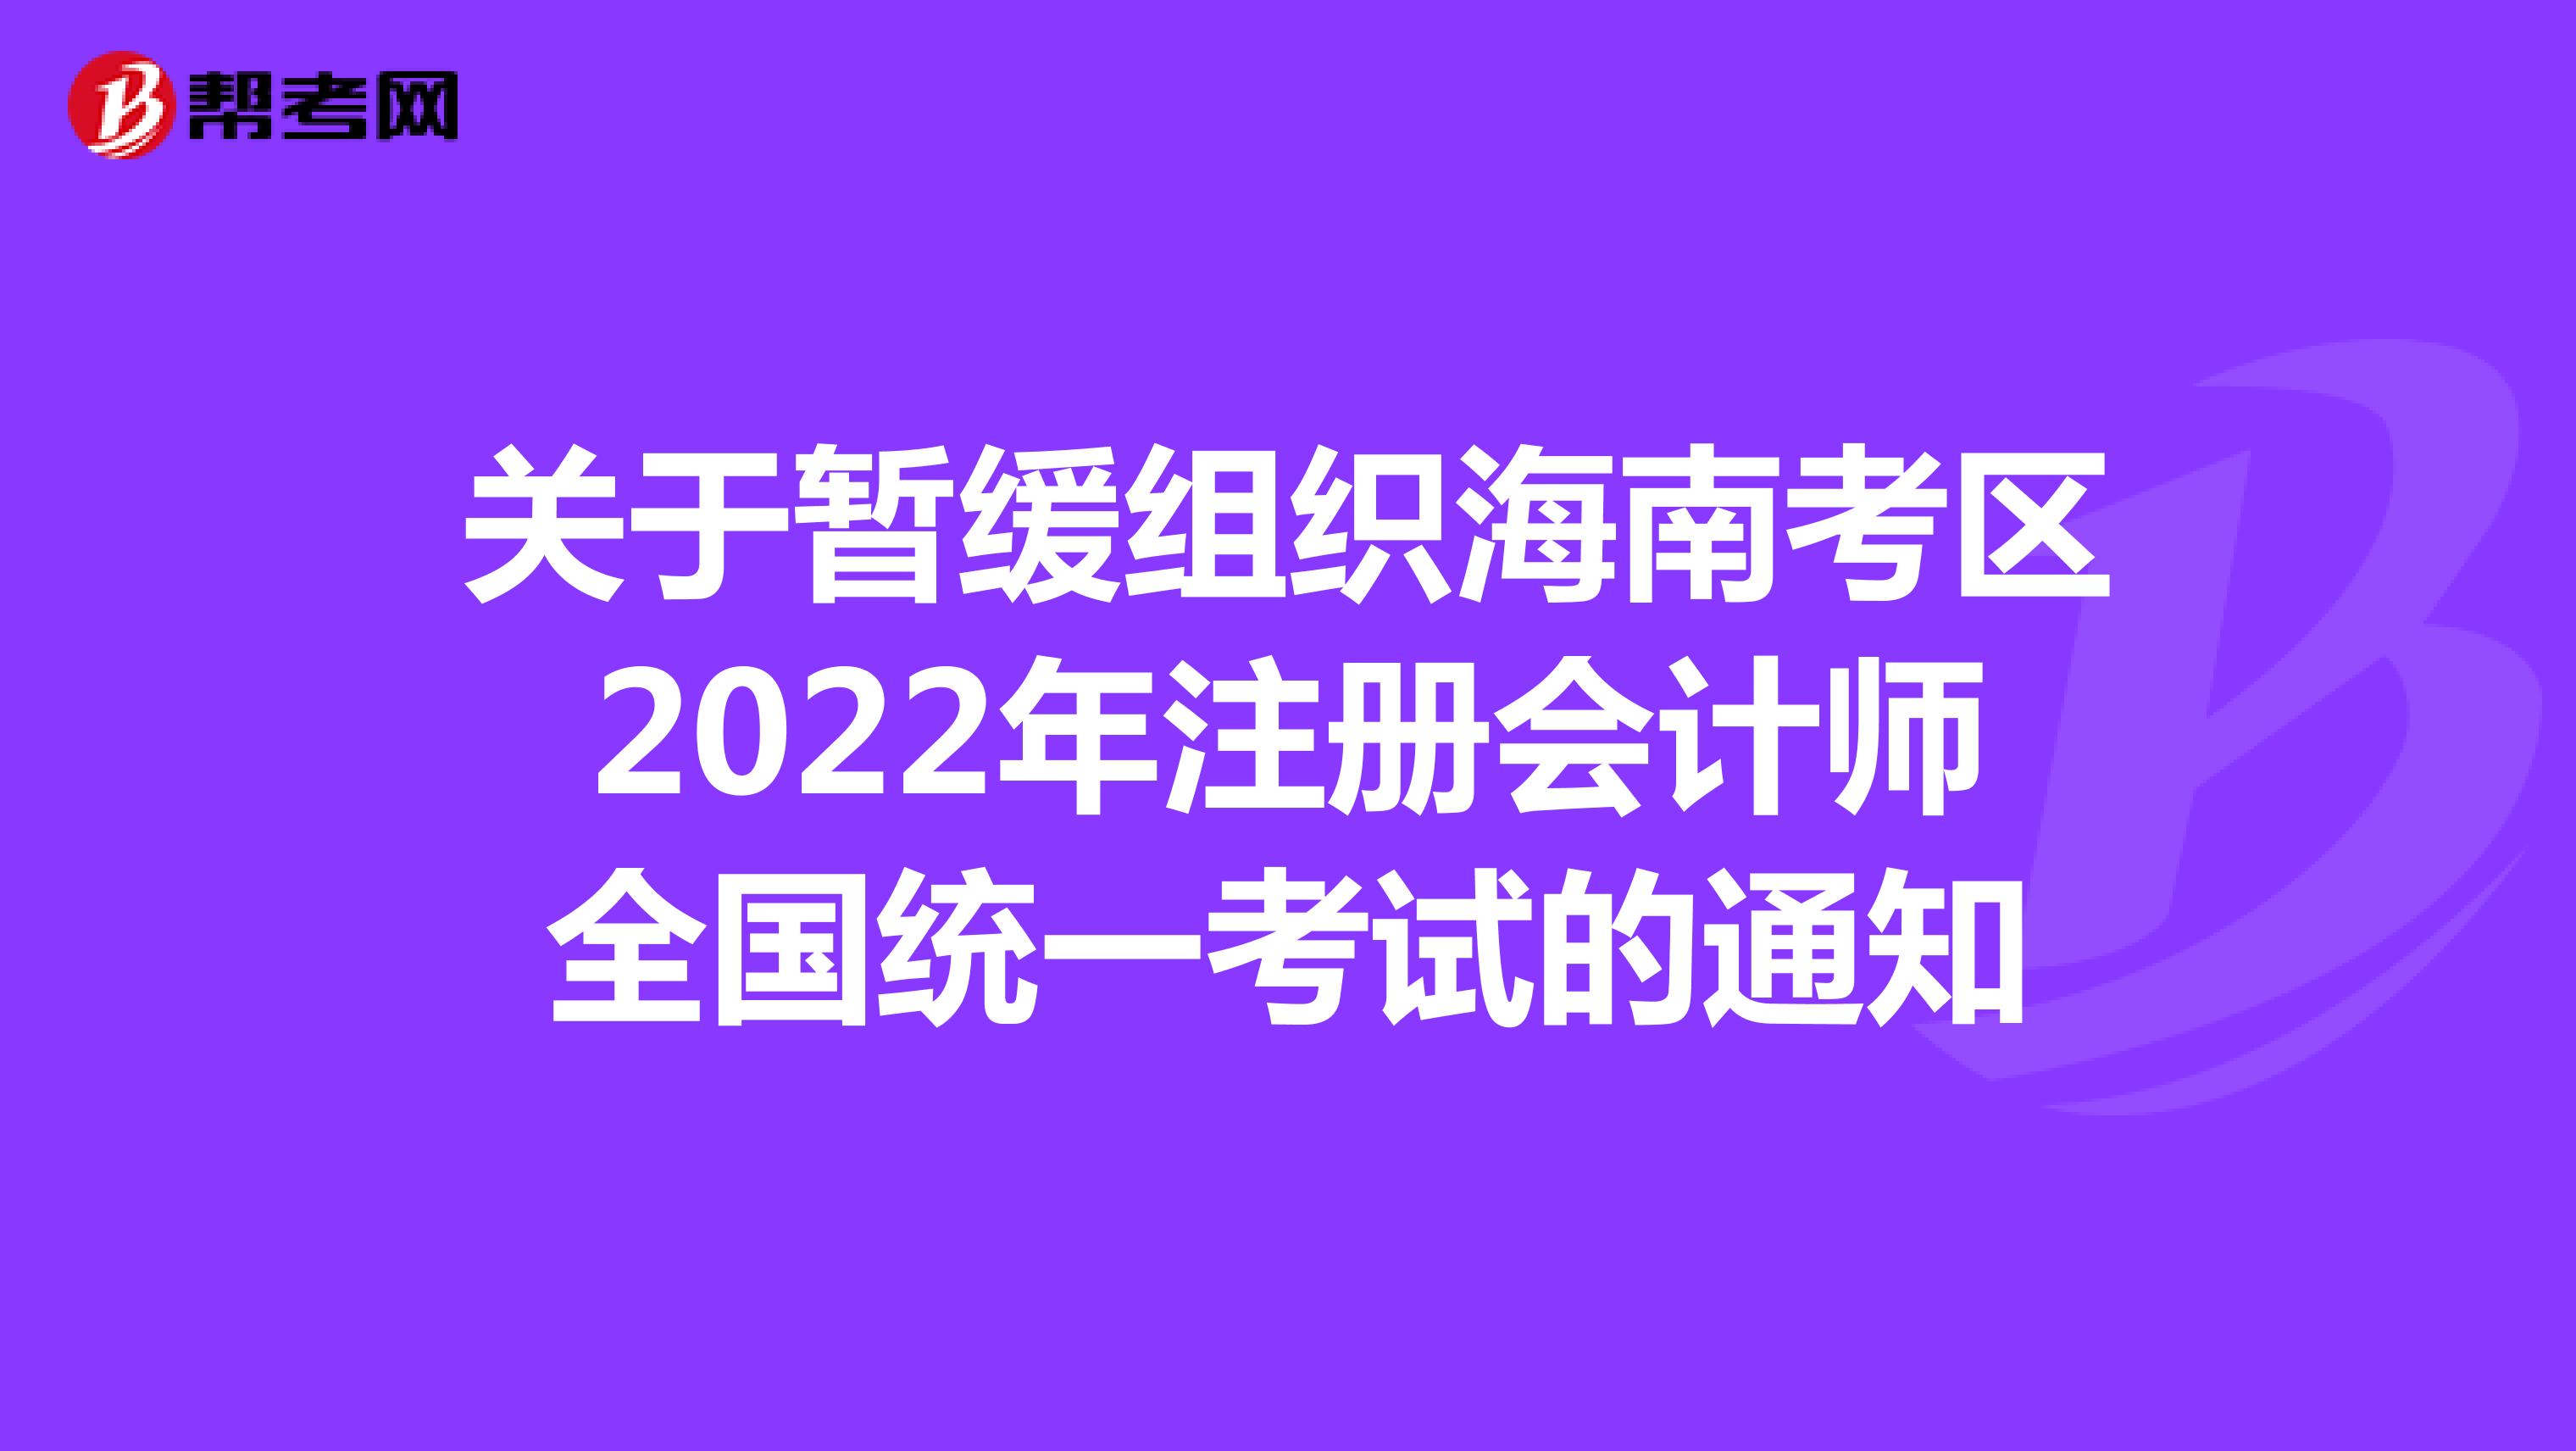 关于暂缓组织海南考区2022年注册会计师全国统一考试的通知